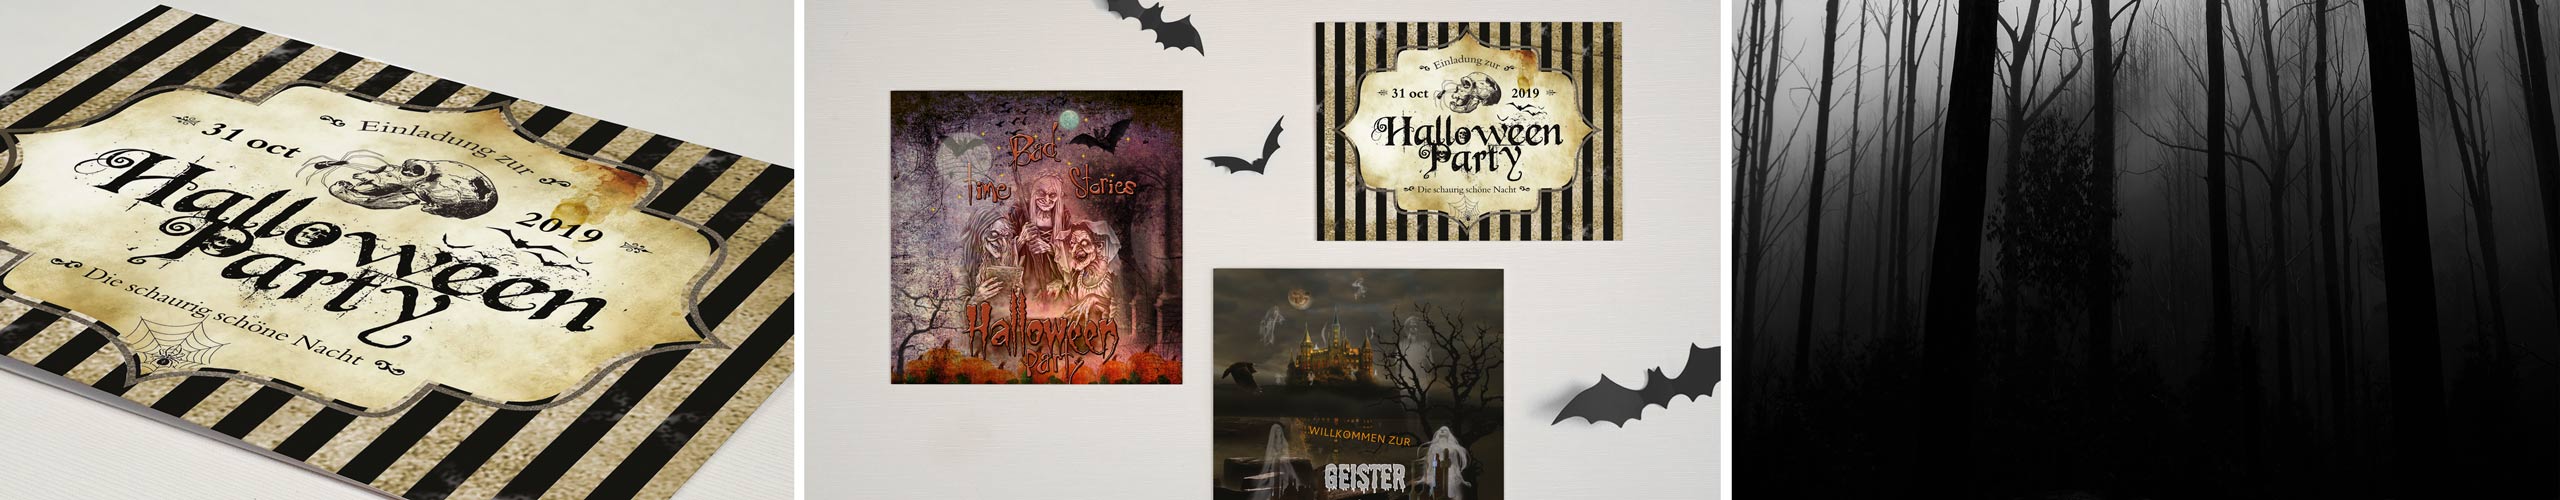 Einladungen zur Halloweenparty mit passenden schaurigen Motiven